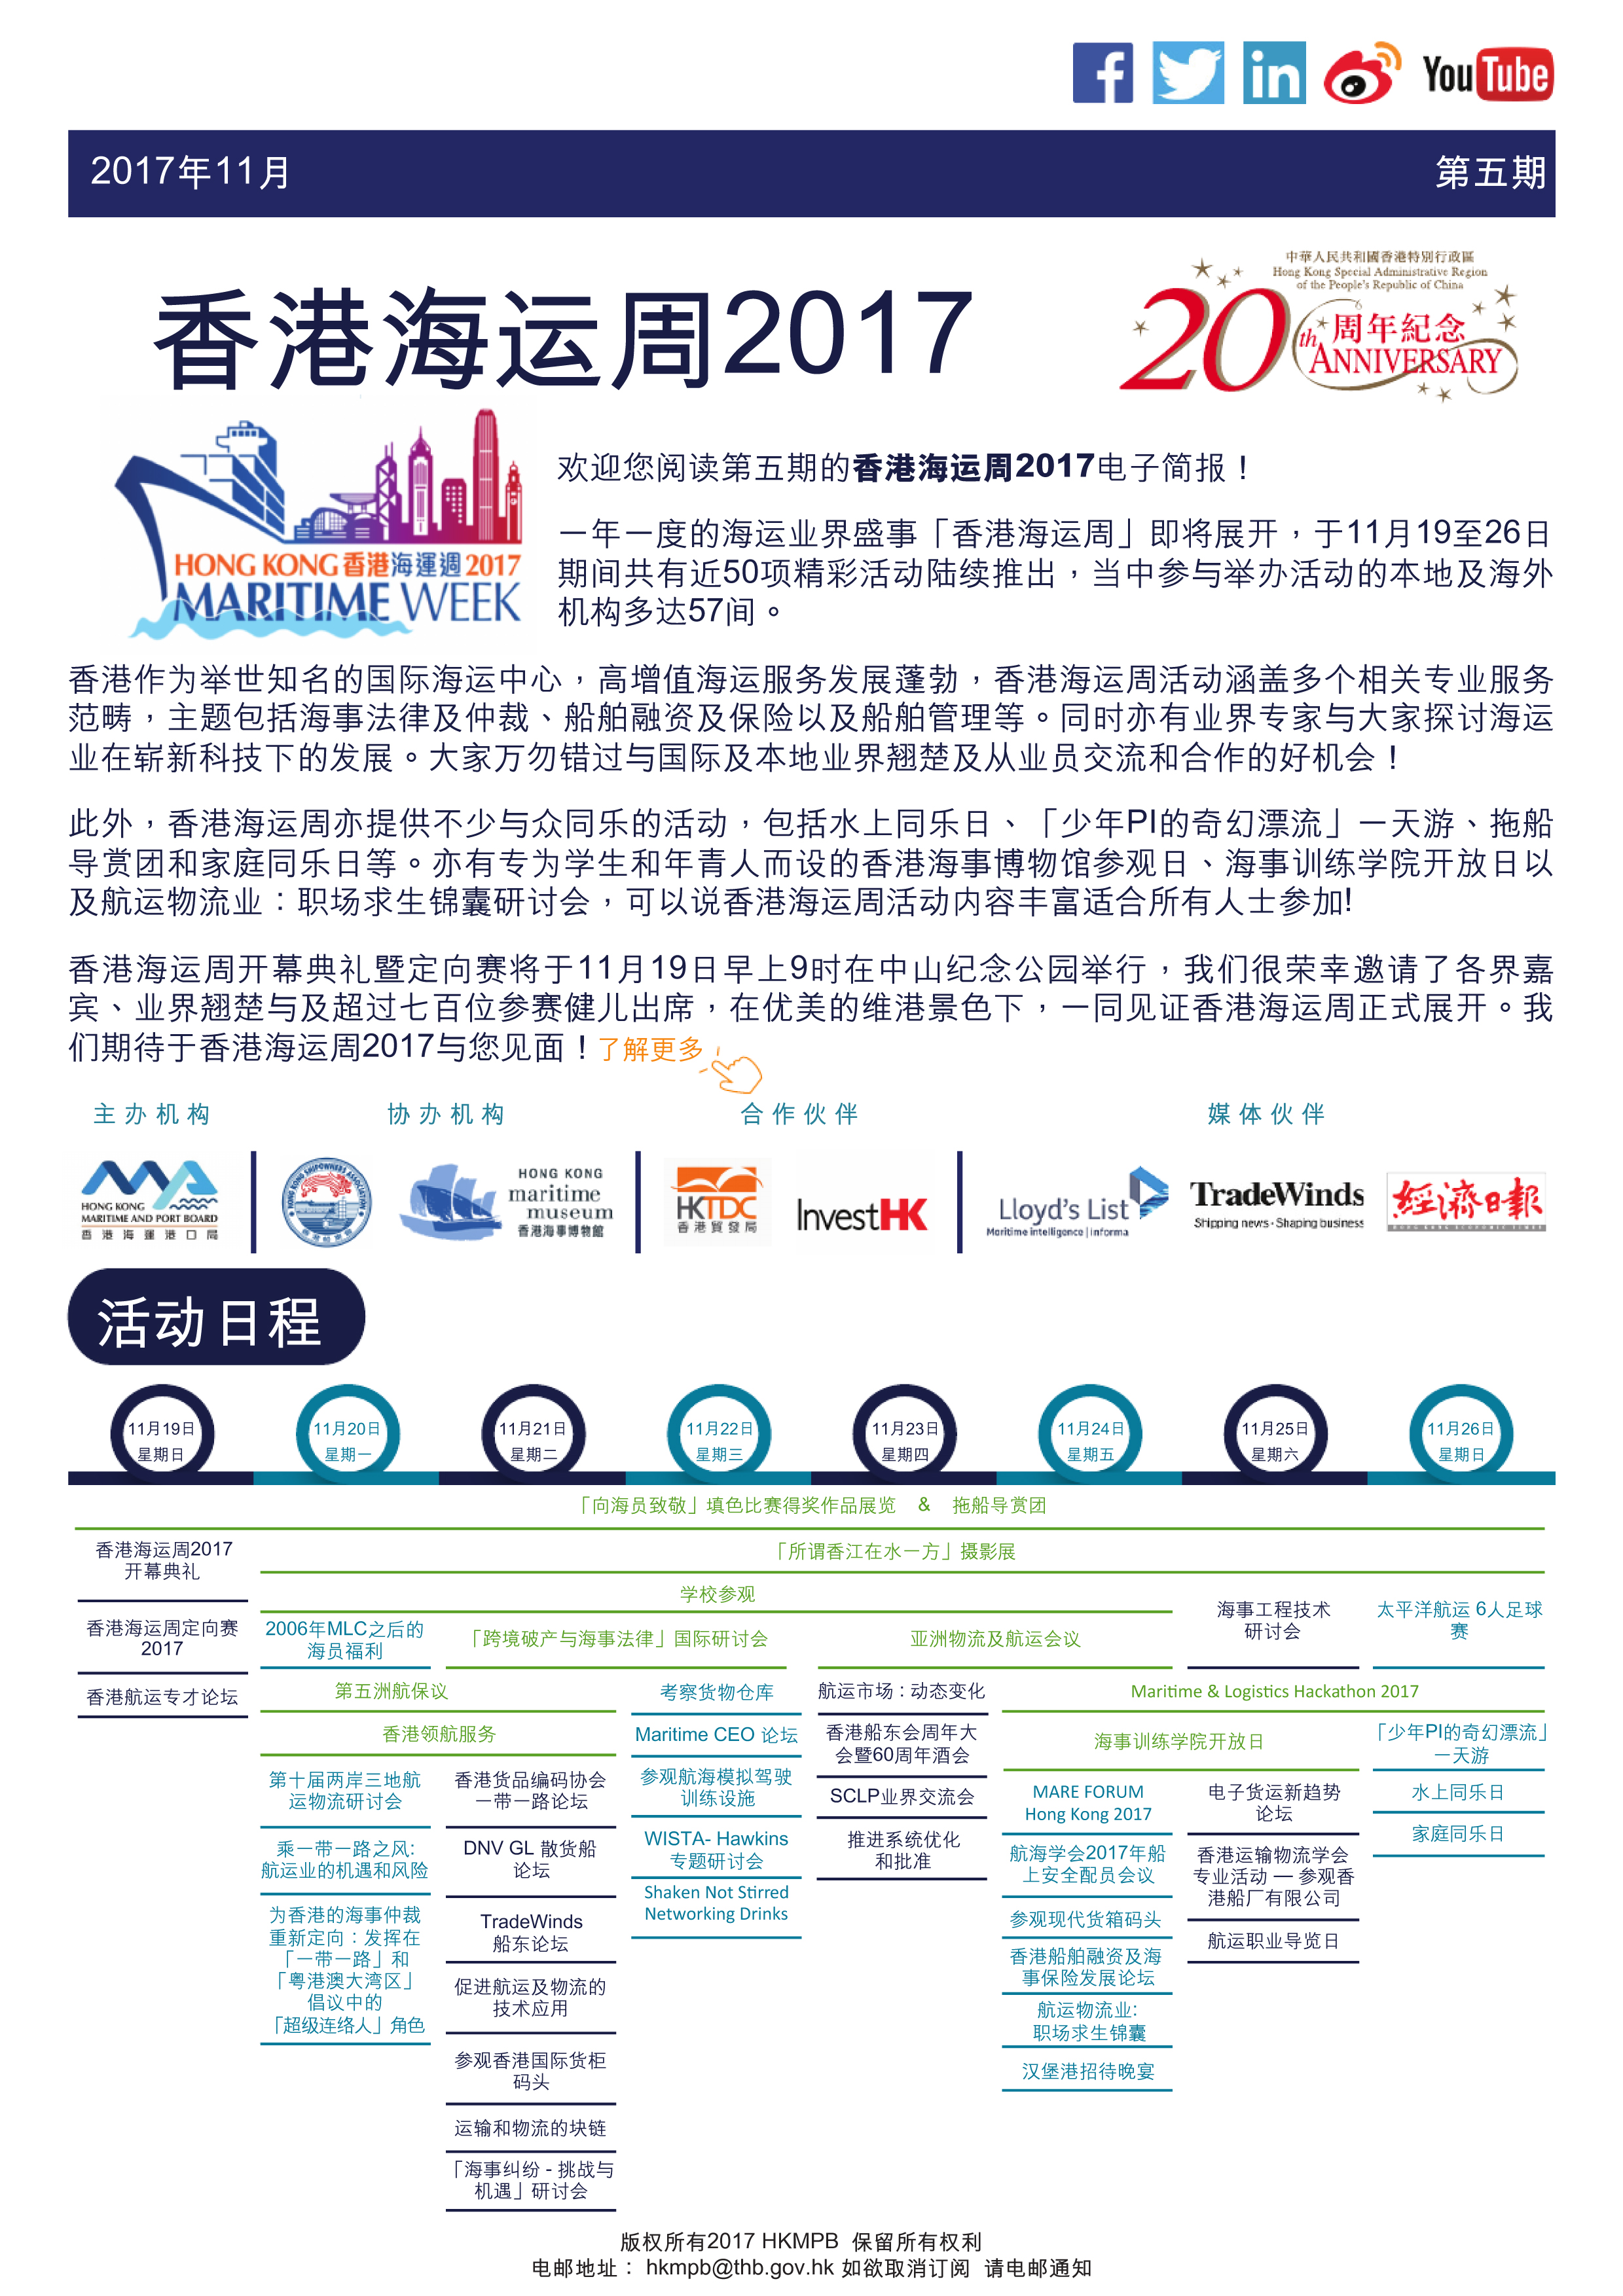 香港海運周2017 電子簡報第5期